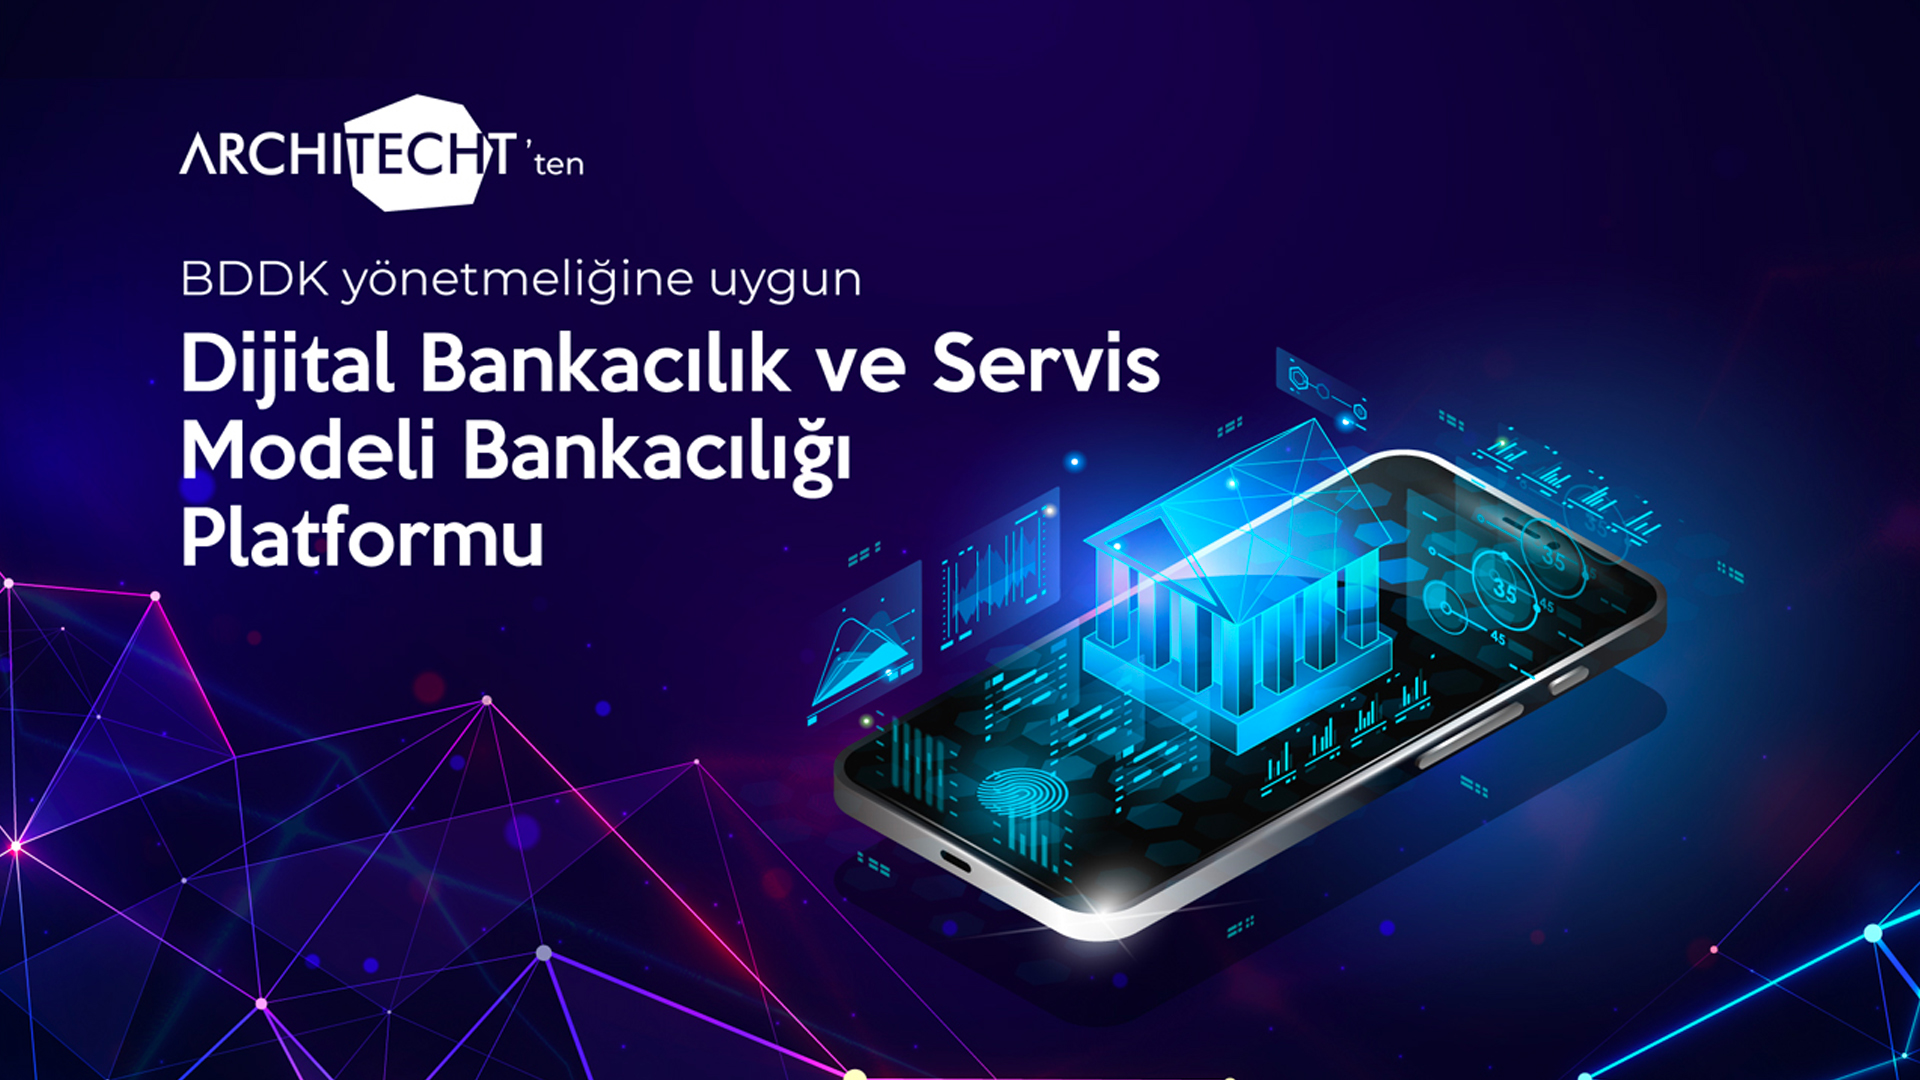 Architecht’ten BDDK Yönetmeliğine Uygun Dijital Bankacılık ve Servis Modeli Bankacılığı (BaaS) Platformu photo